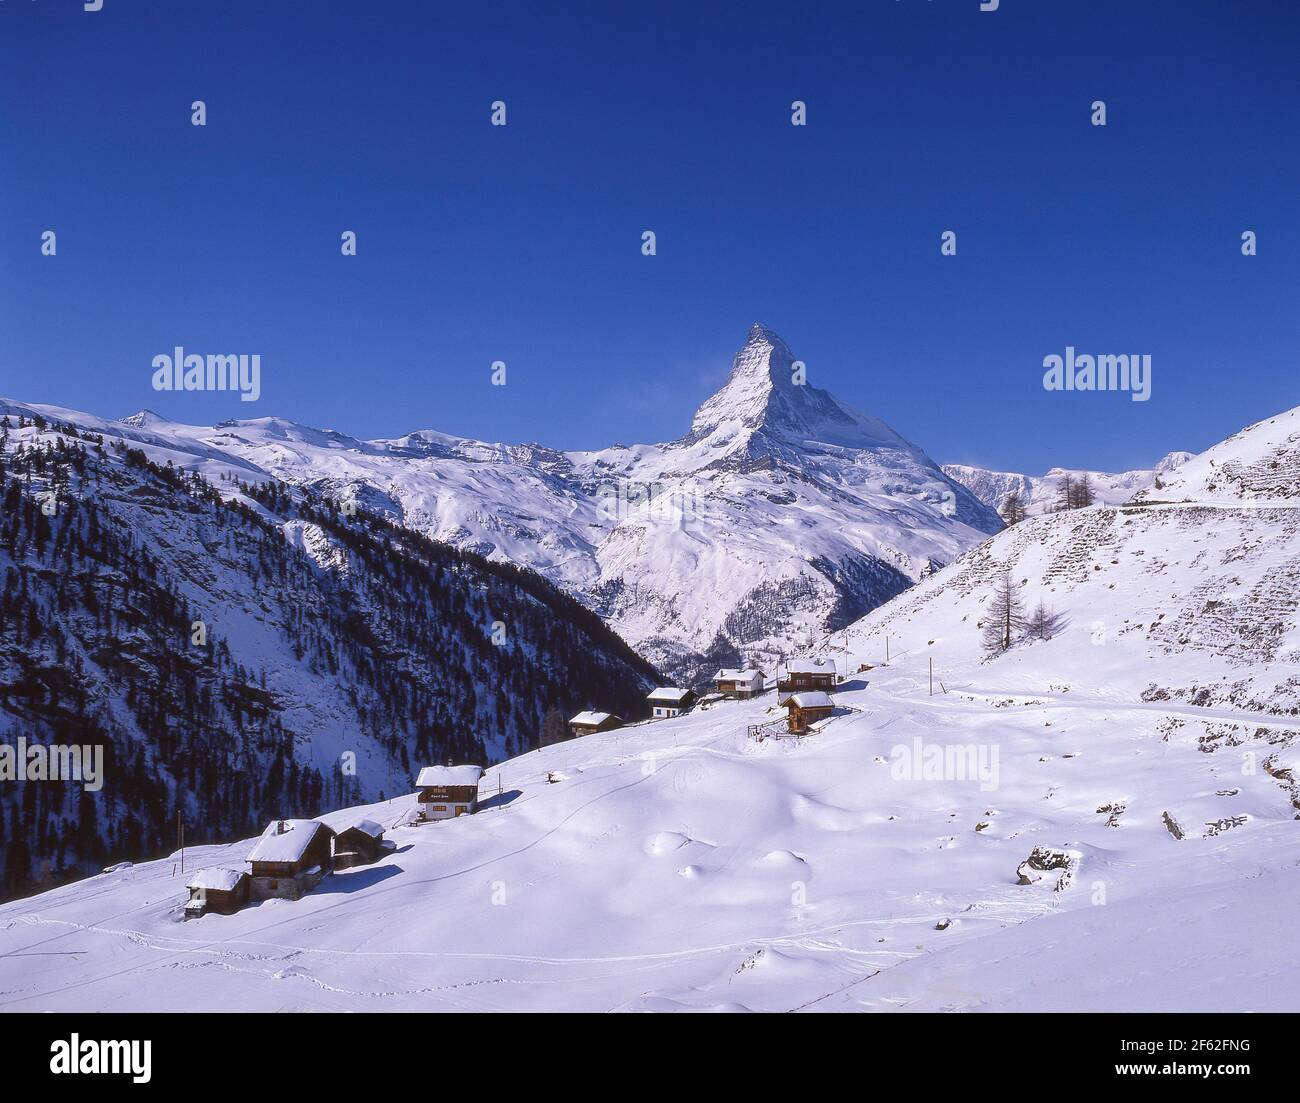 Berghütten und Skipiste mit Matterhorn Mountain Behind, Zermatt, Wallis, Schweiz Stockfoto